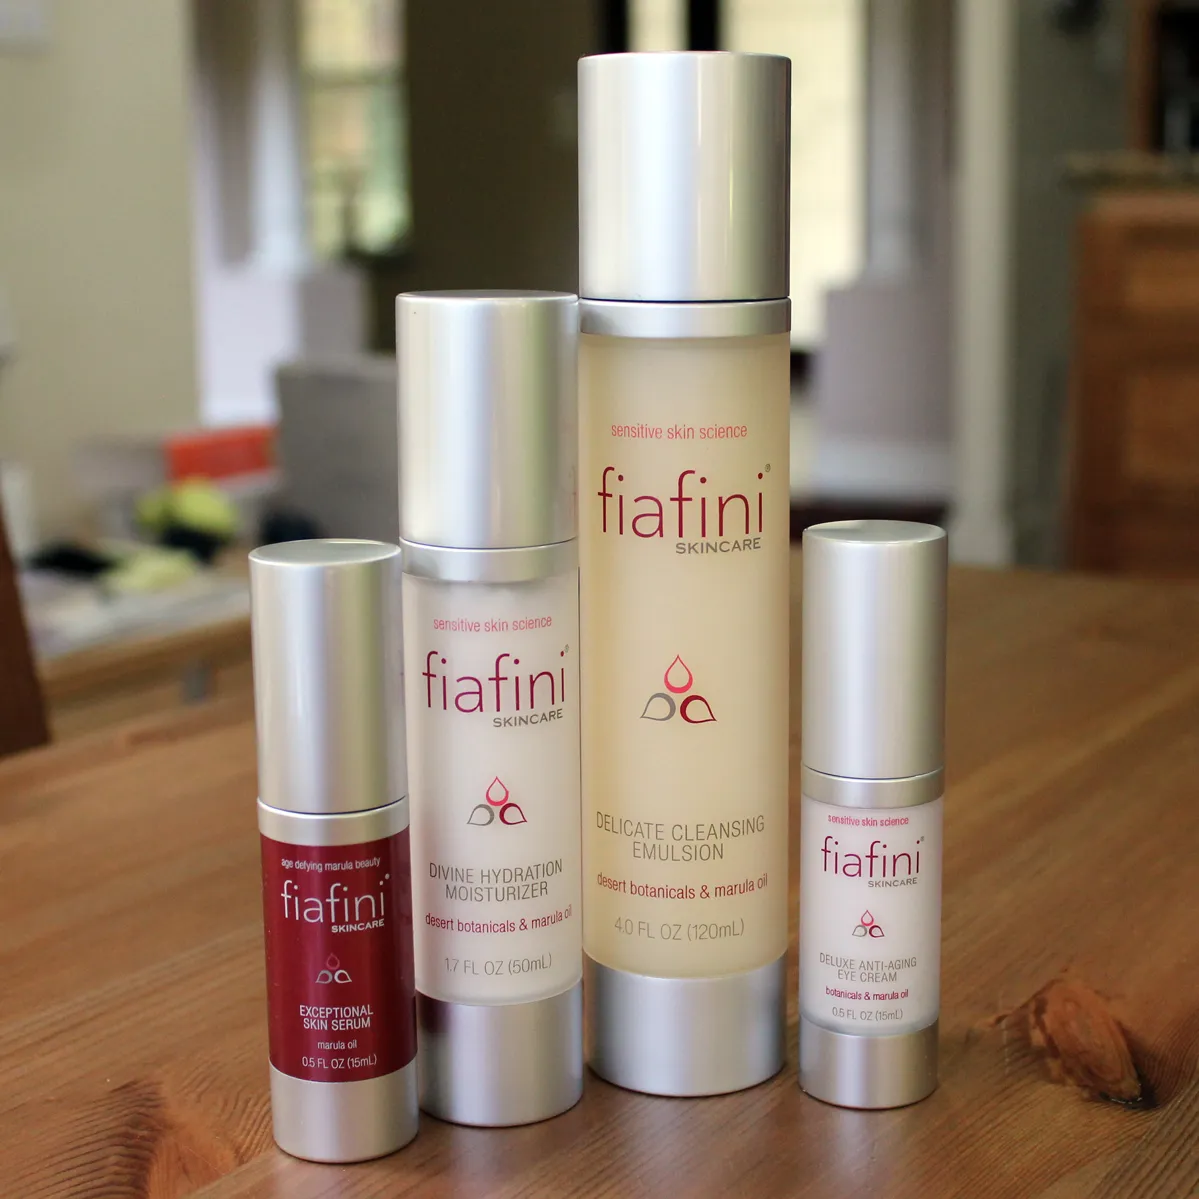 New Fiafini skincare products photo 1